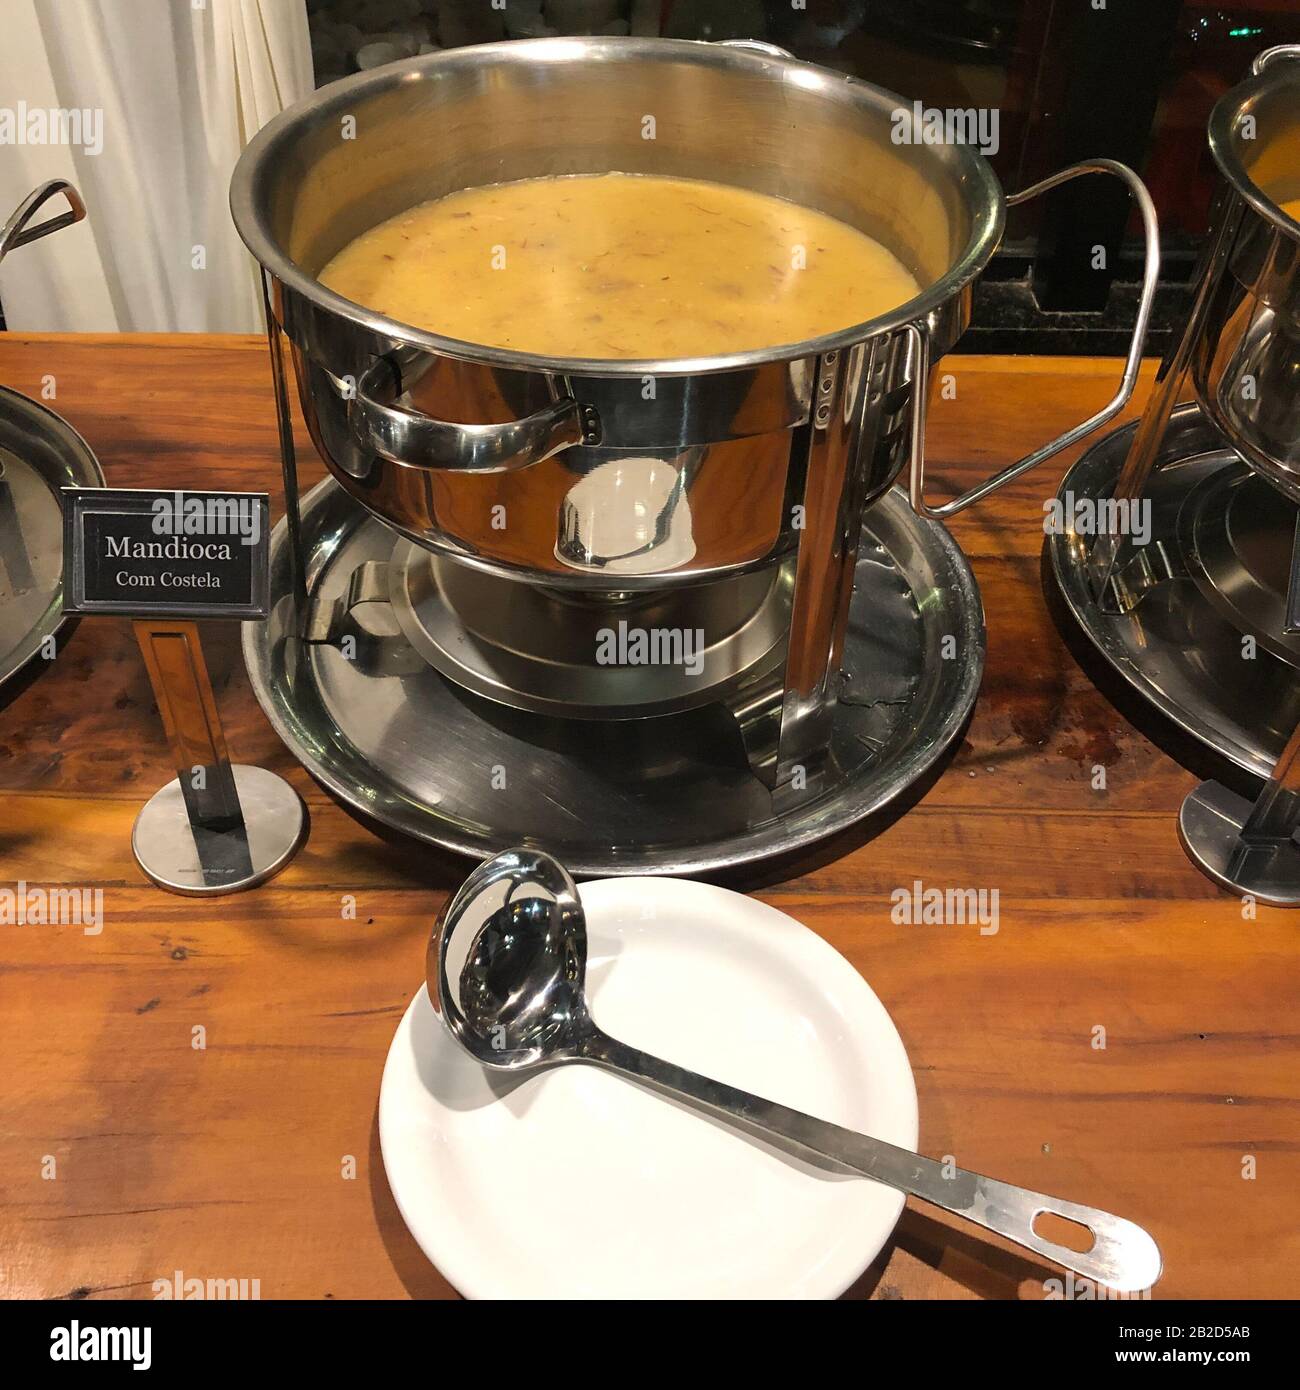 Foto der Suppe, die in einem Restaurant serviert wird. Farbbild, im Restaurant, Standpunkt des Kunden. Stockfoto